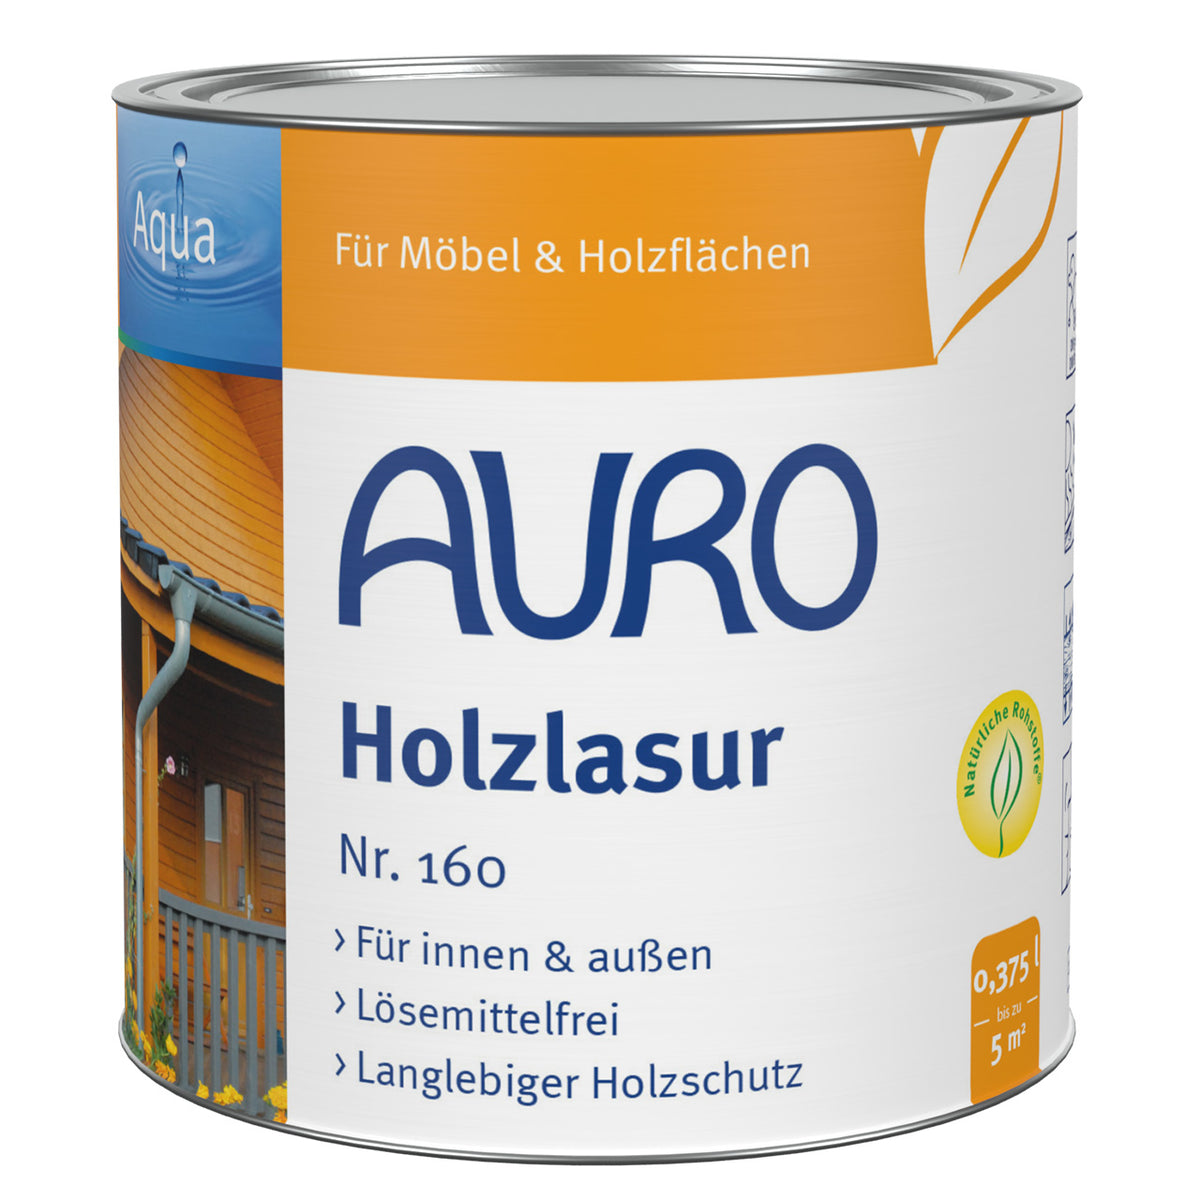 AURO Holzlasur Aqua Nr. 160-00 | Farblos